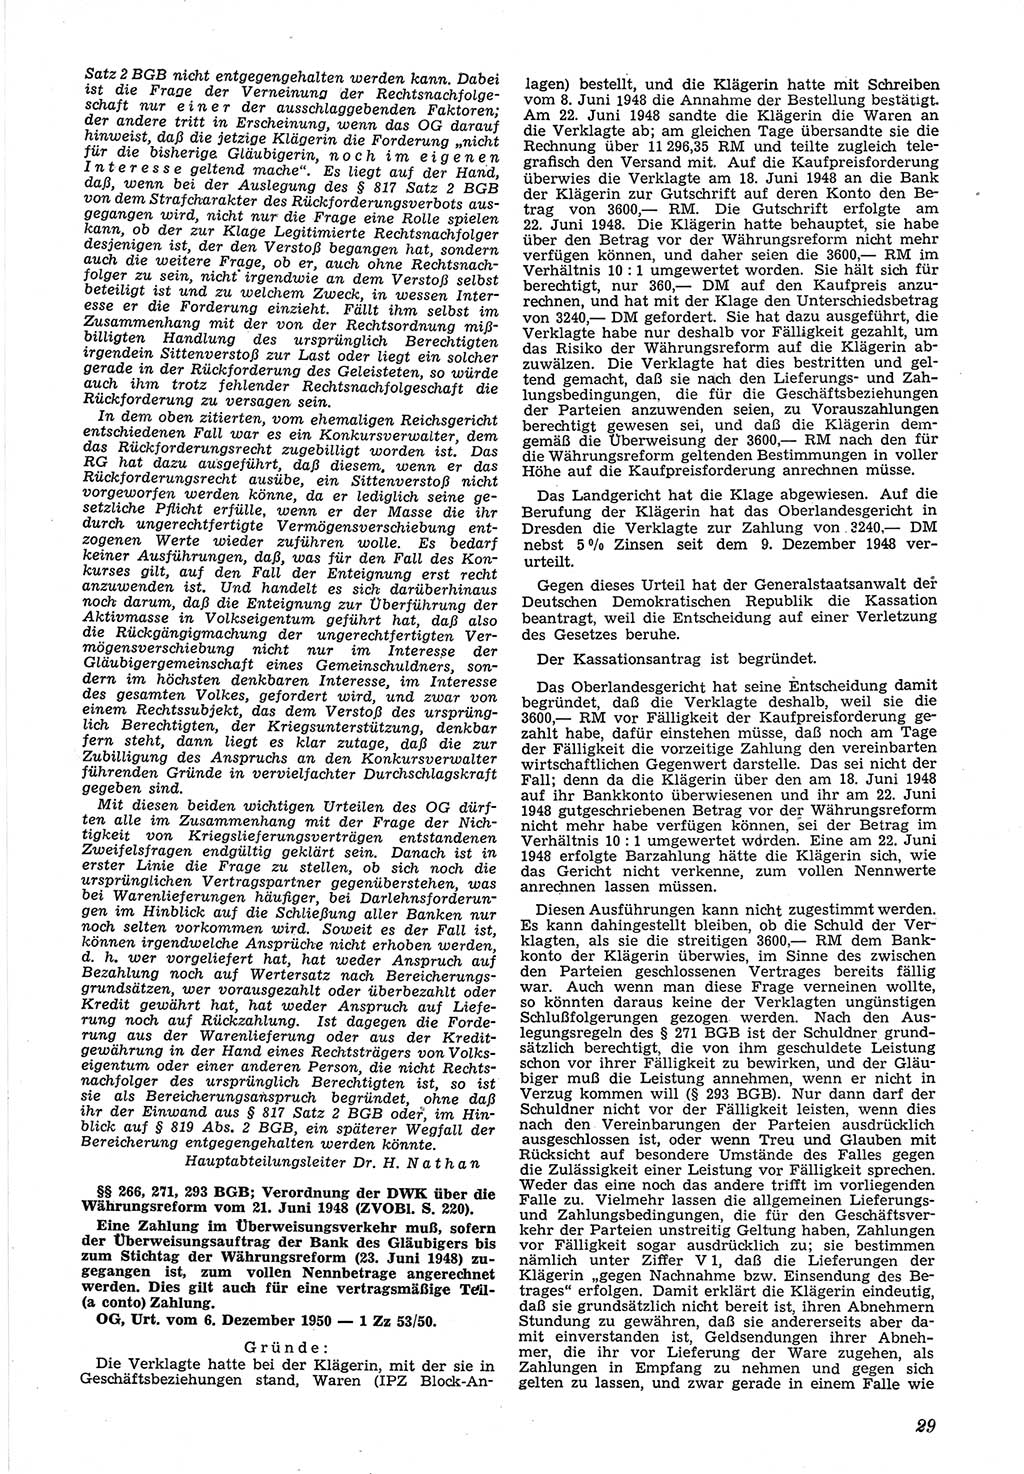 Neue Justiz (NJ), Zeitschrift für Recht und Rechtswissenschaft [Deutsche Demokratische Republik (DDR)], 5. Jahrgang 1951, Seite 29 (NJ DDR 1951, S. 29)